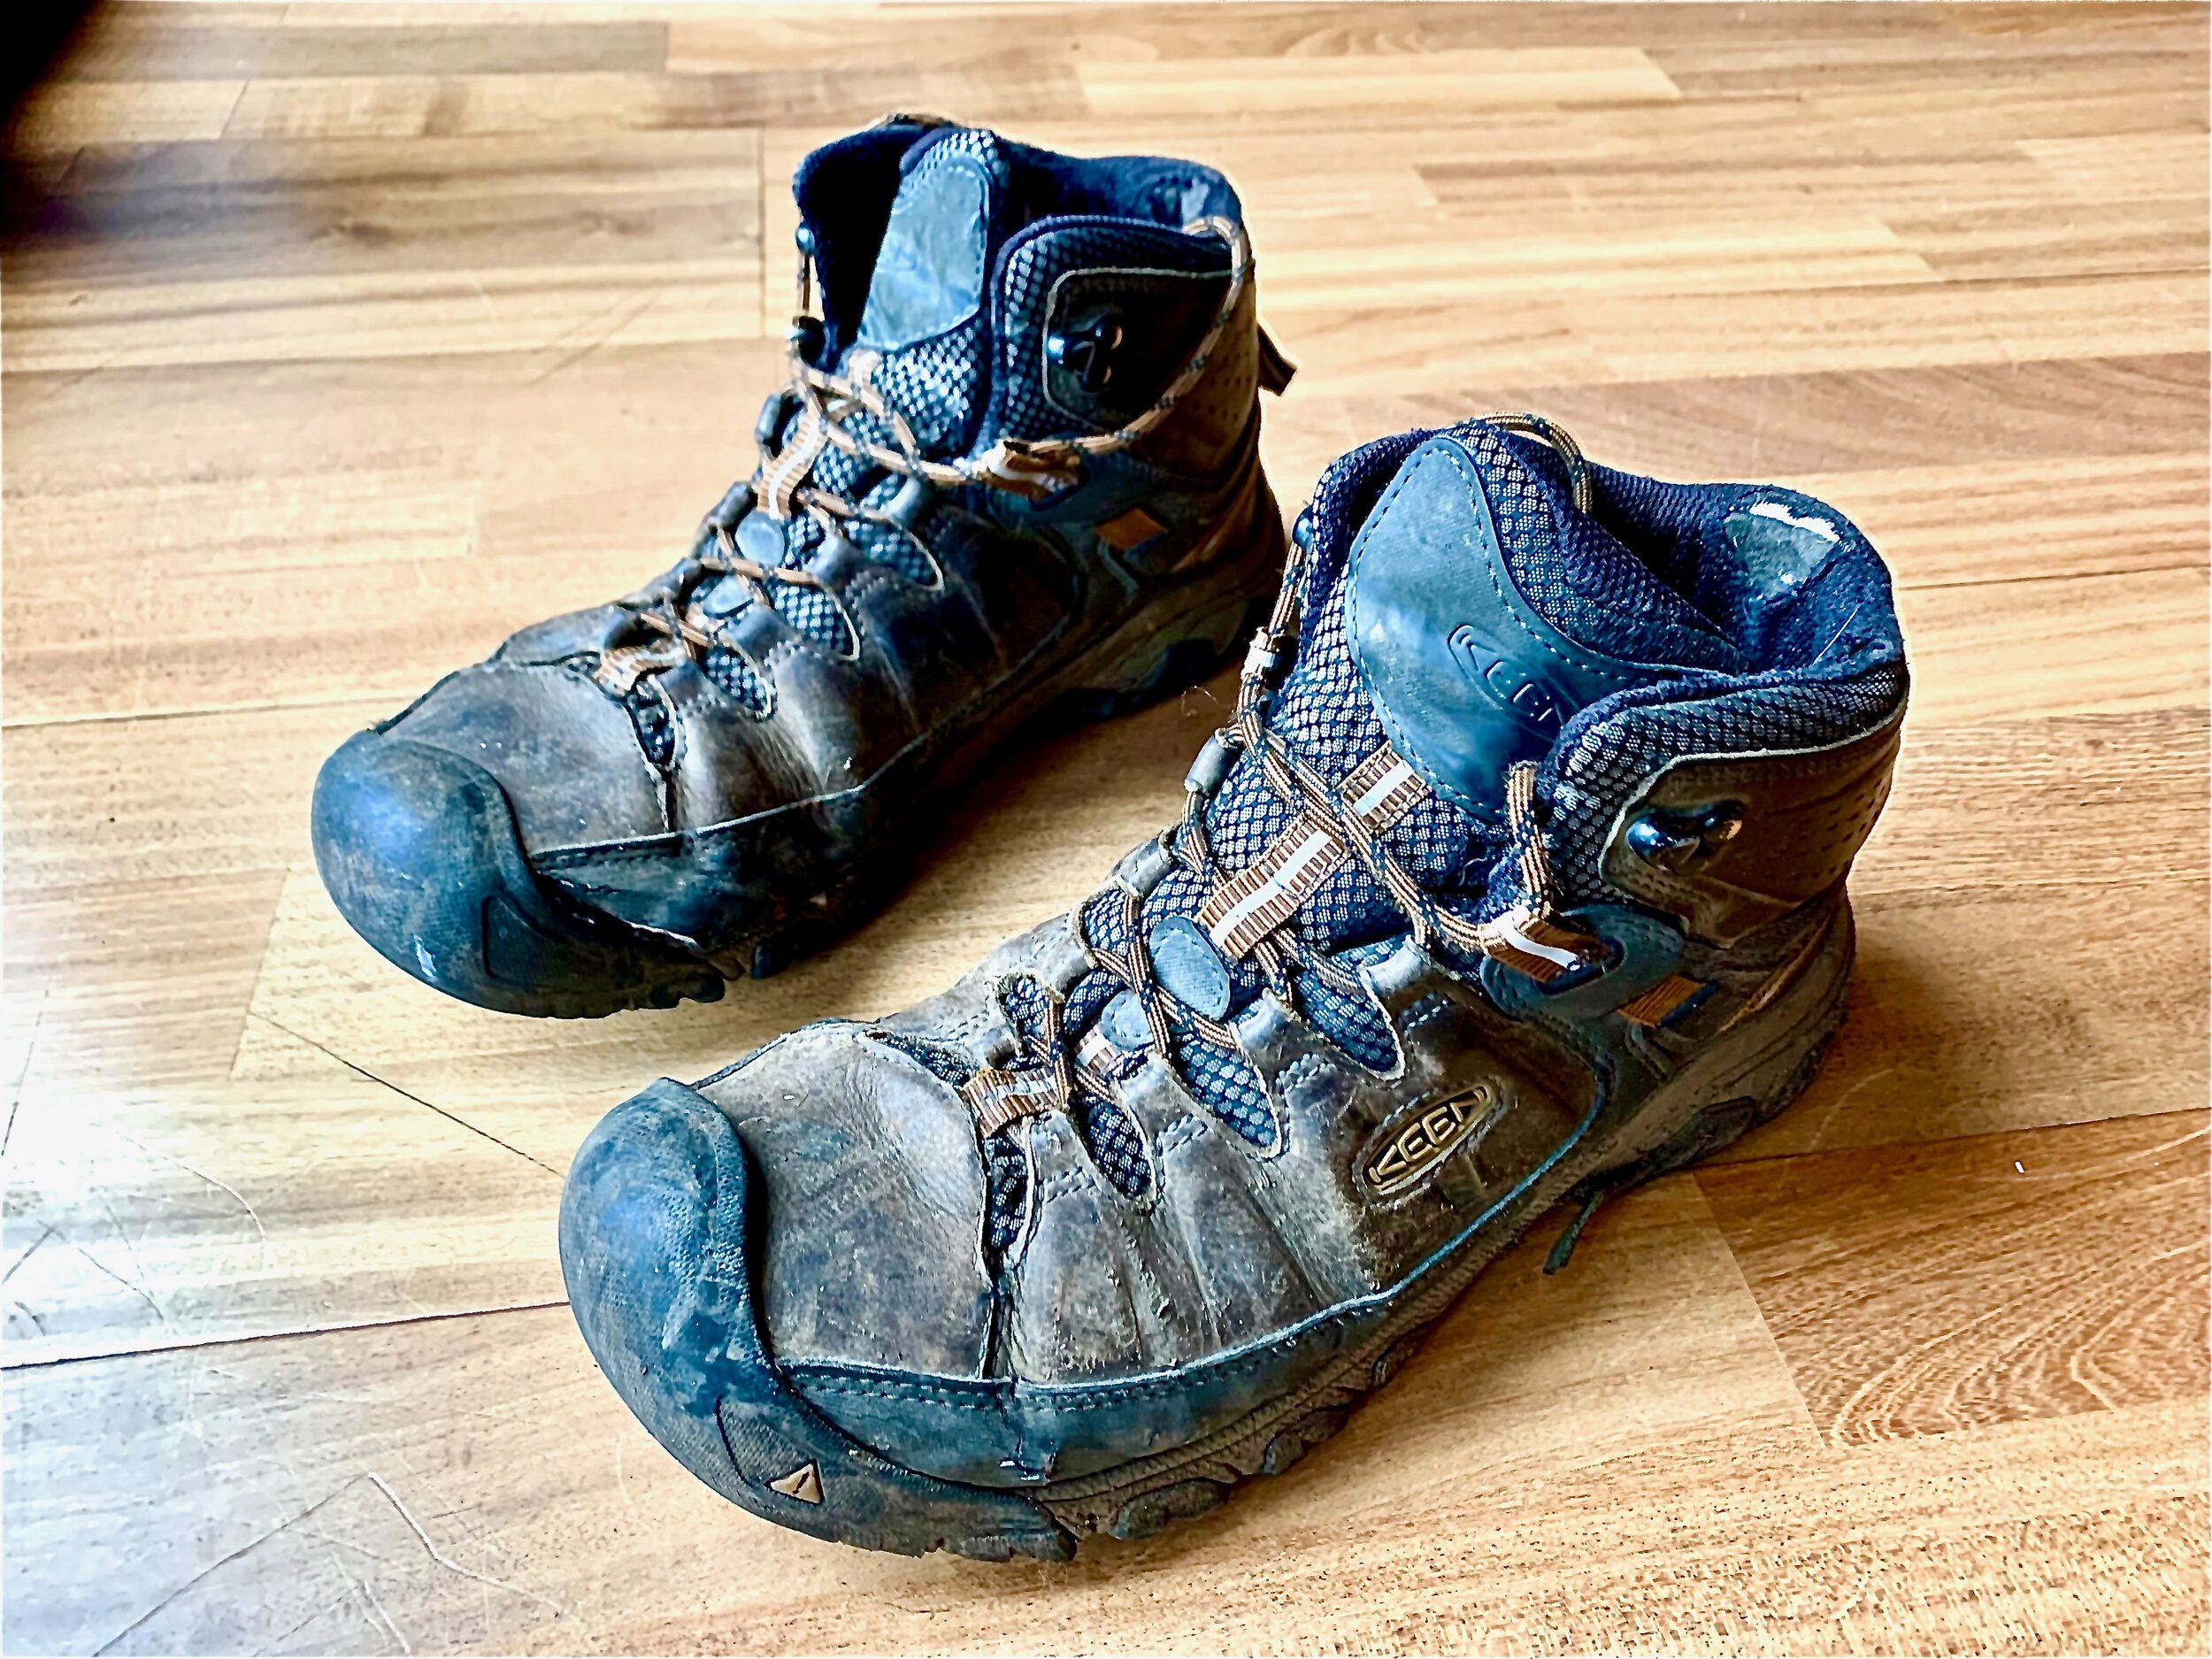 Keen Targhee III Hiking Shoe Review